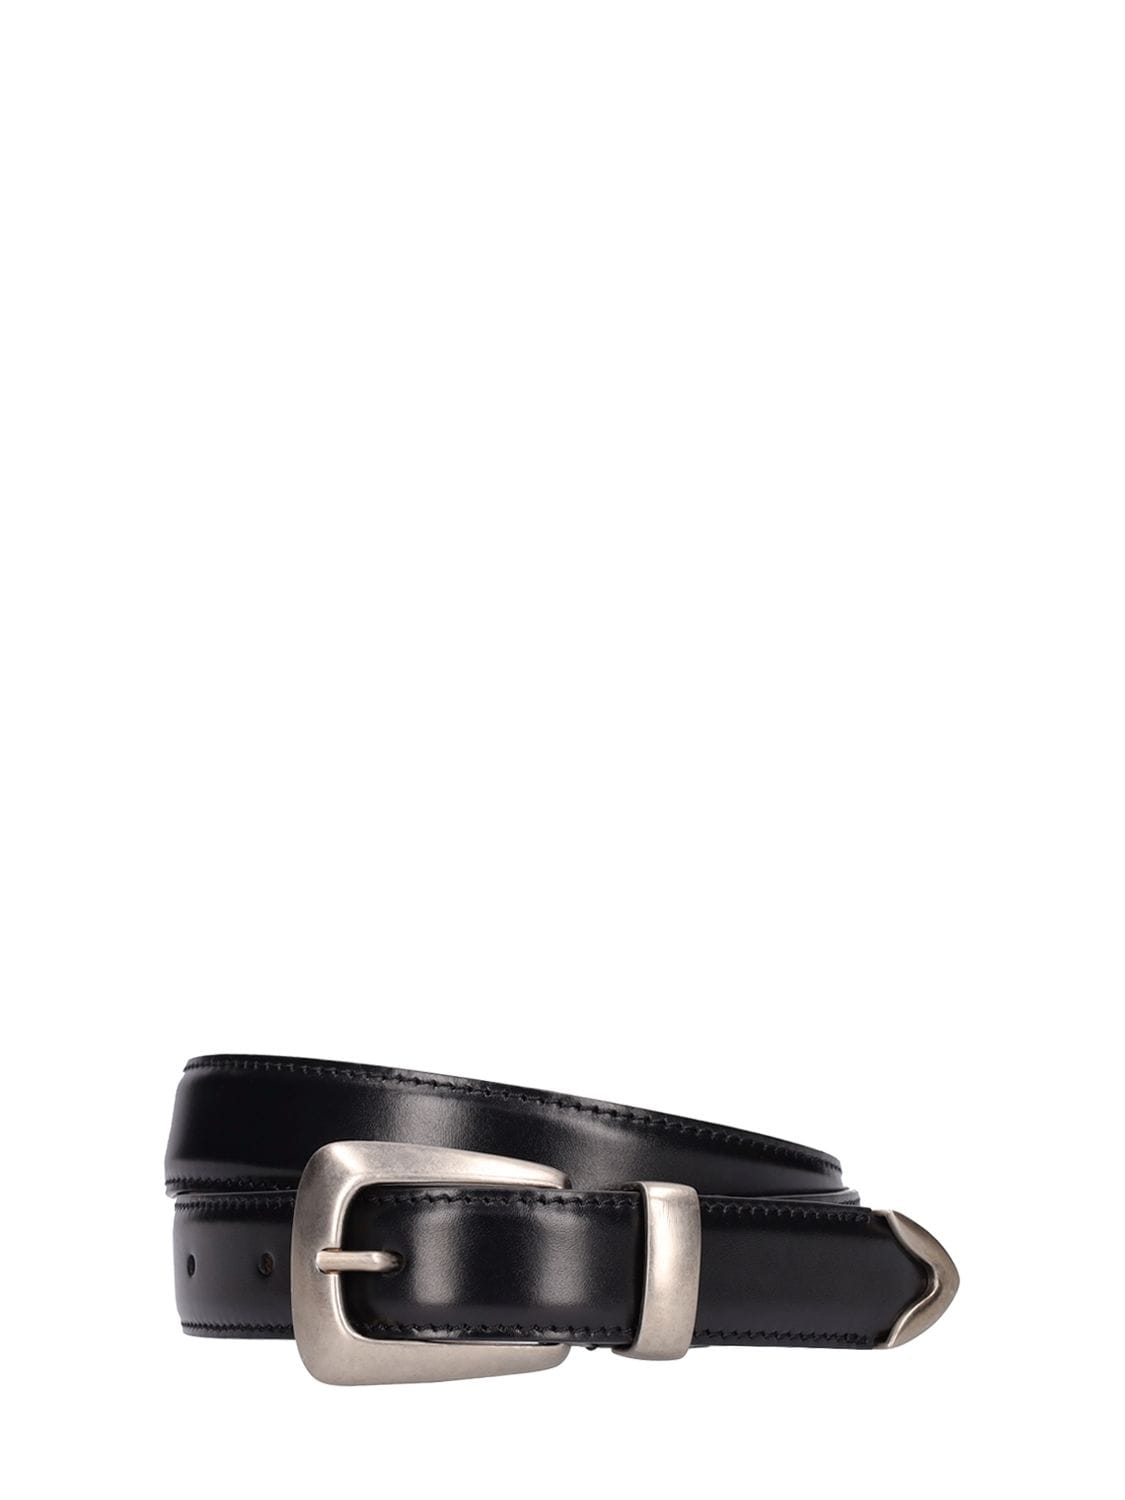 Khaite 3cm Benny Leather Belt In Black | ModeSens